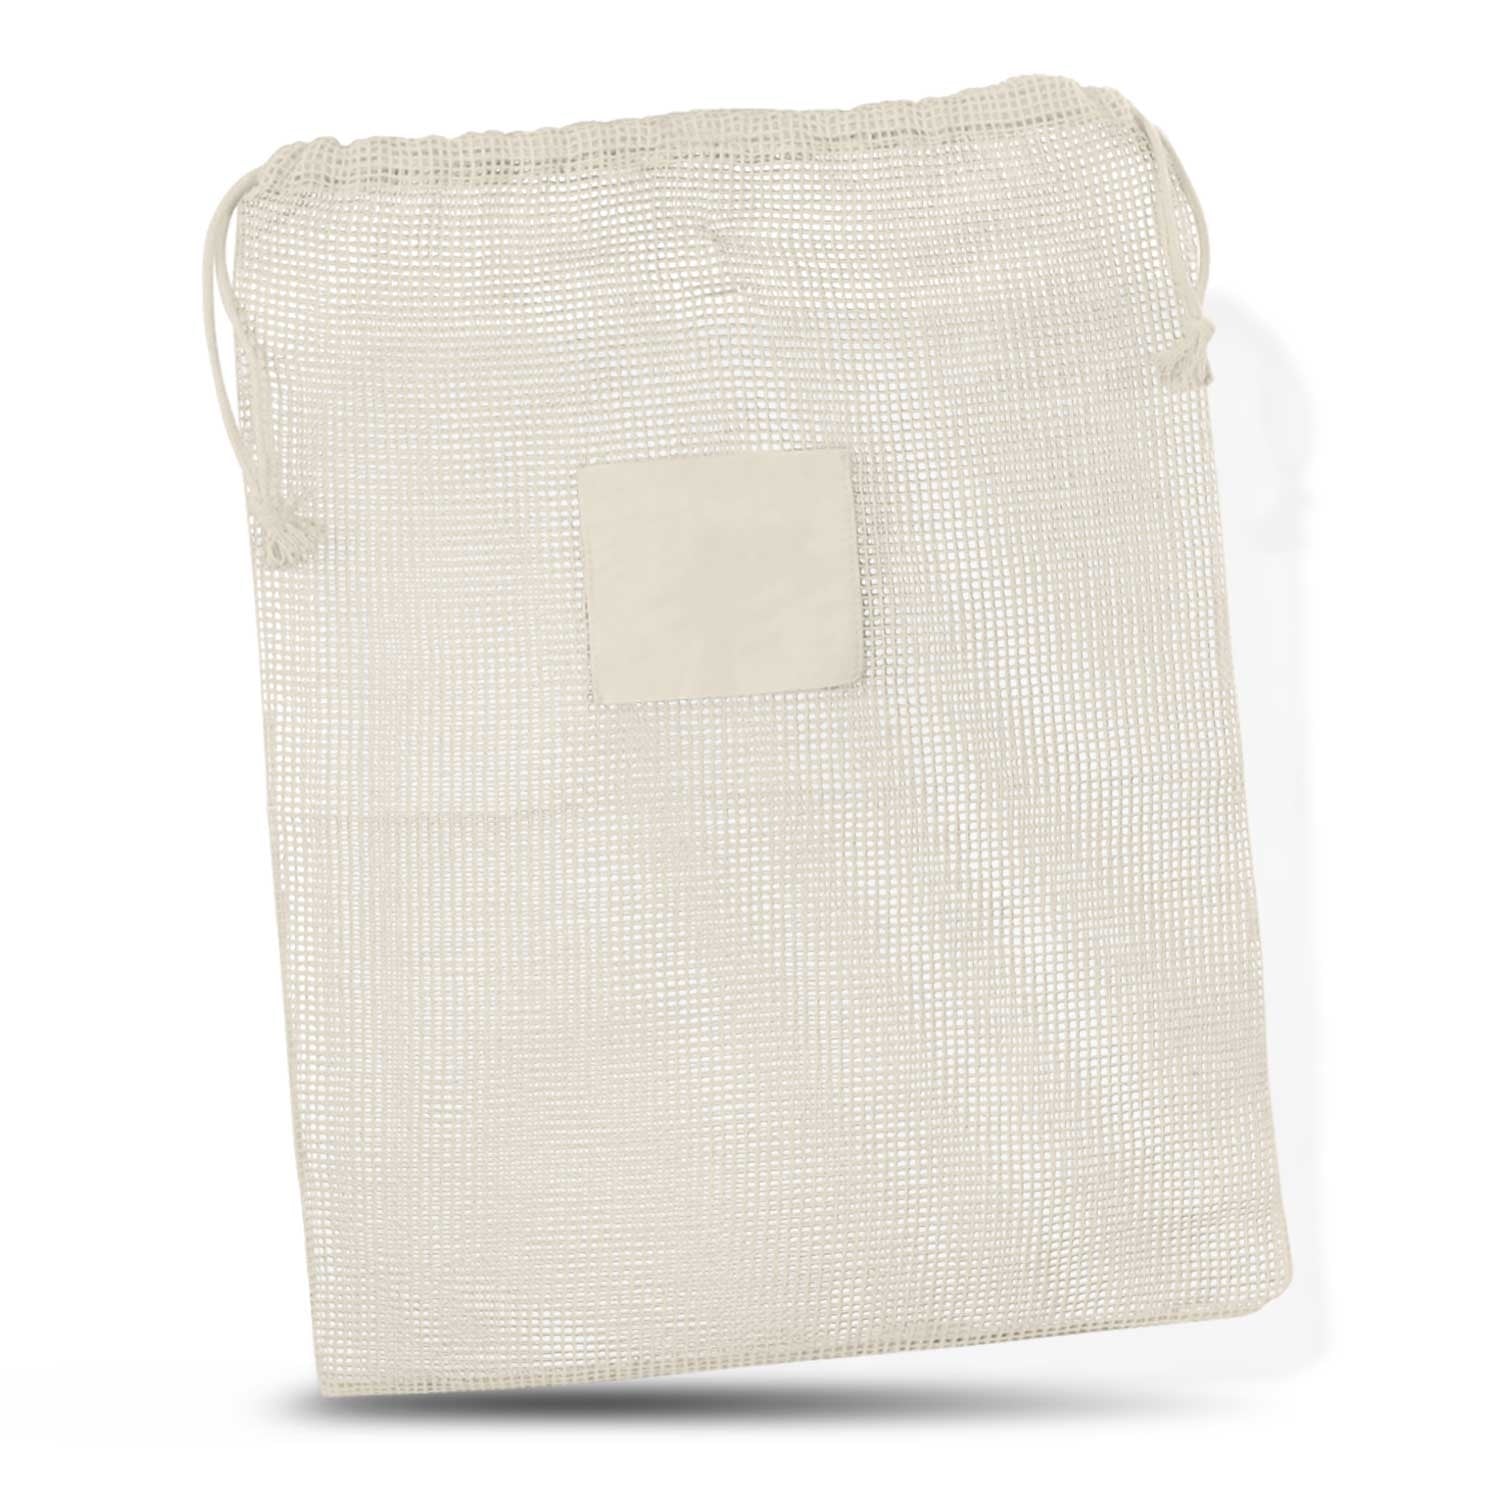 Cotton Produce Bag [113360]